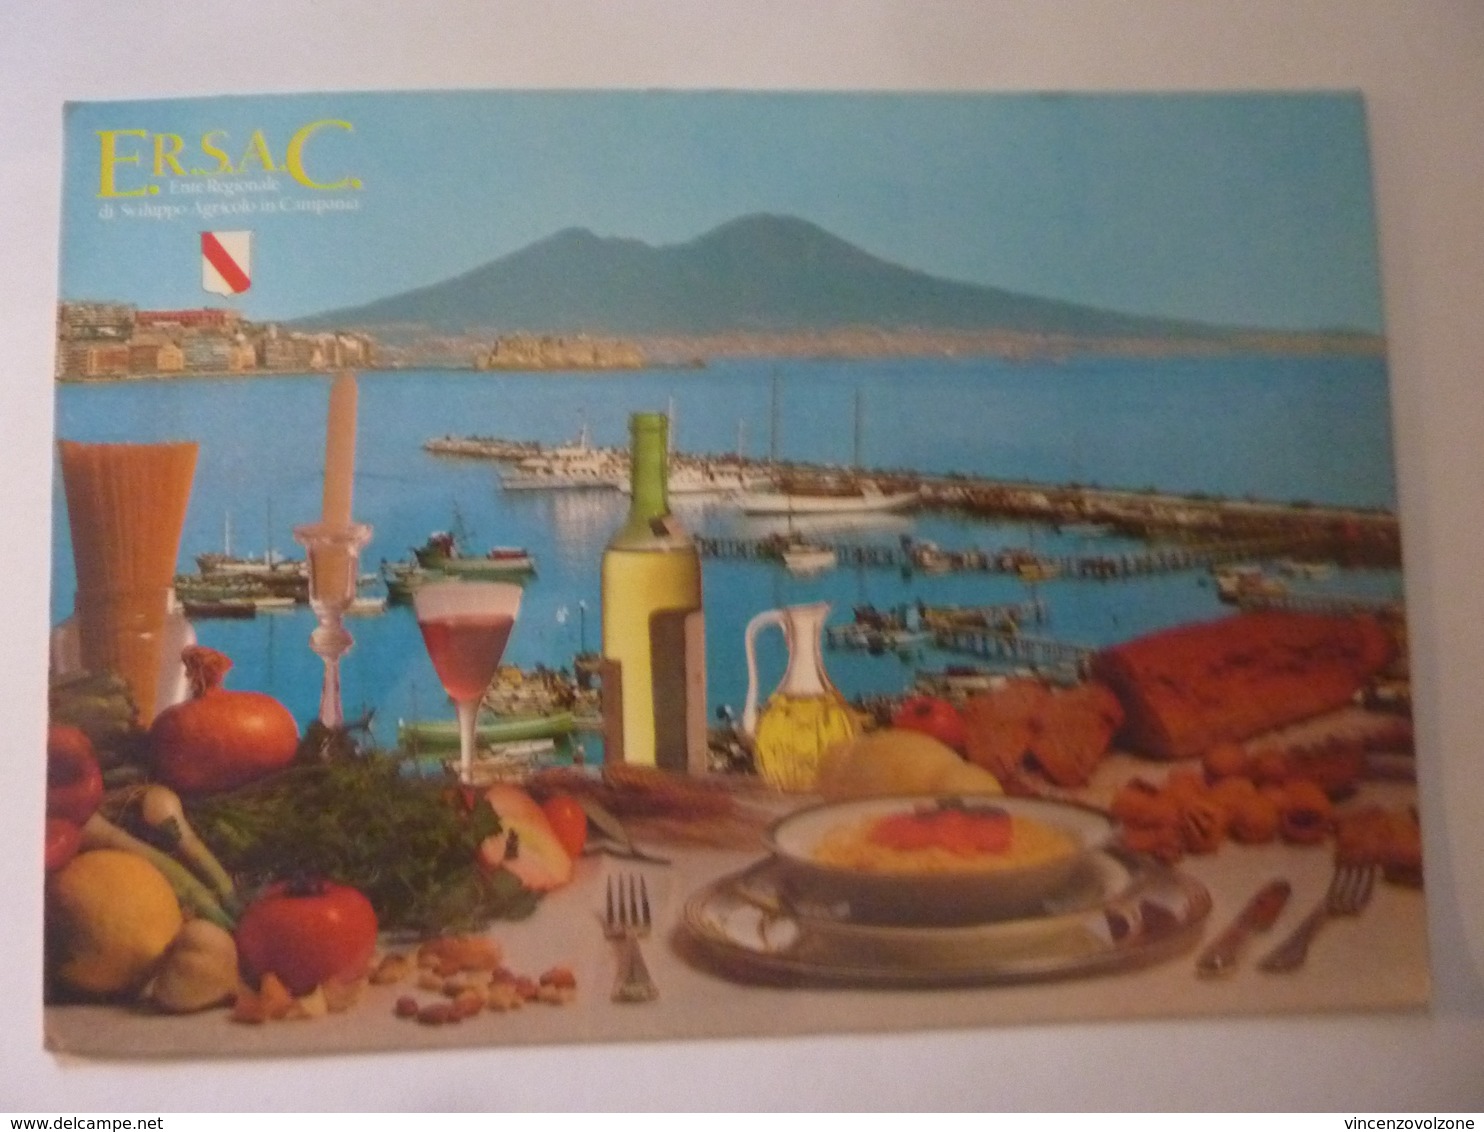 Cartolina Viaggiata "E.R.S.A.C. Valorizzazione Dei Prodotti Agricoli Della Campania" 1999 - Napoli